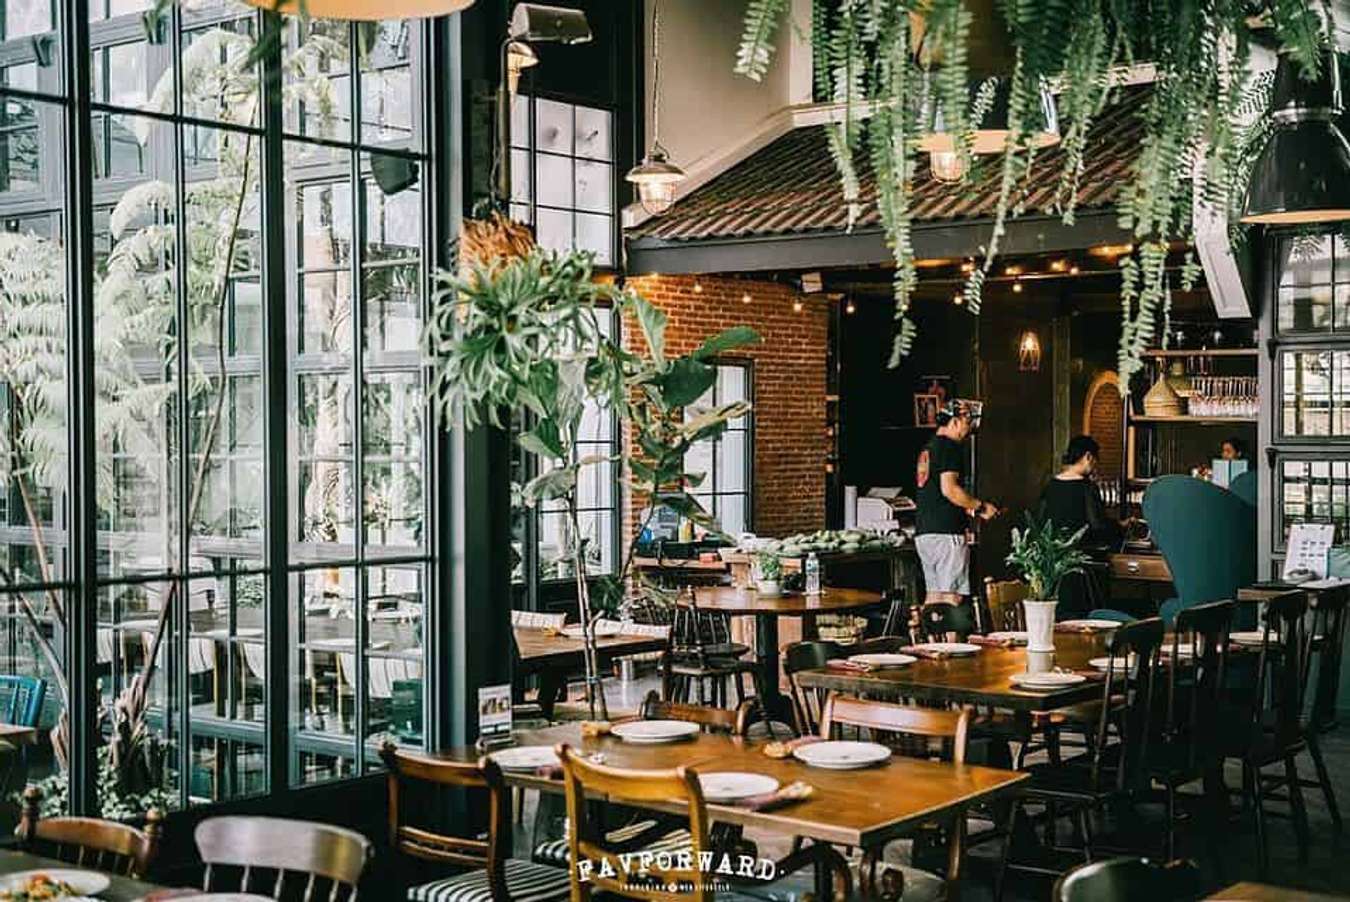 Quán cà phê ở Bangkok: Với không gian cổ điển, trầm lắng và hương vị cà phê ngon tuyệt, quán cà phê này đảm bảo sẽ khiến bạn thích thú ngay từ lần đầu đến thăm. Xem bức ảnh này và chắc chắn bạn sẽ muốn dành thời gian để thưởng thức tách cà phê trầm lắng tại đây.